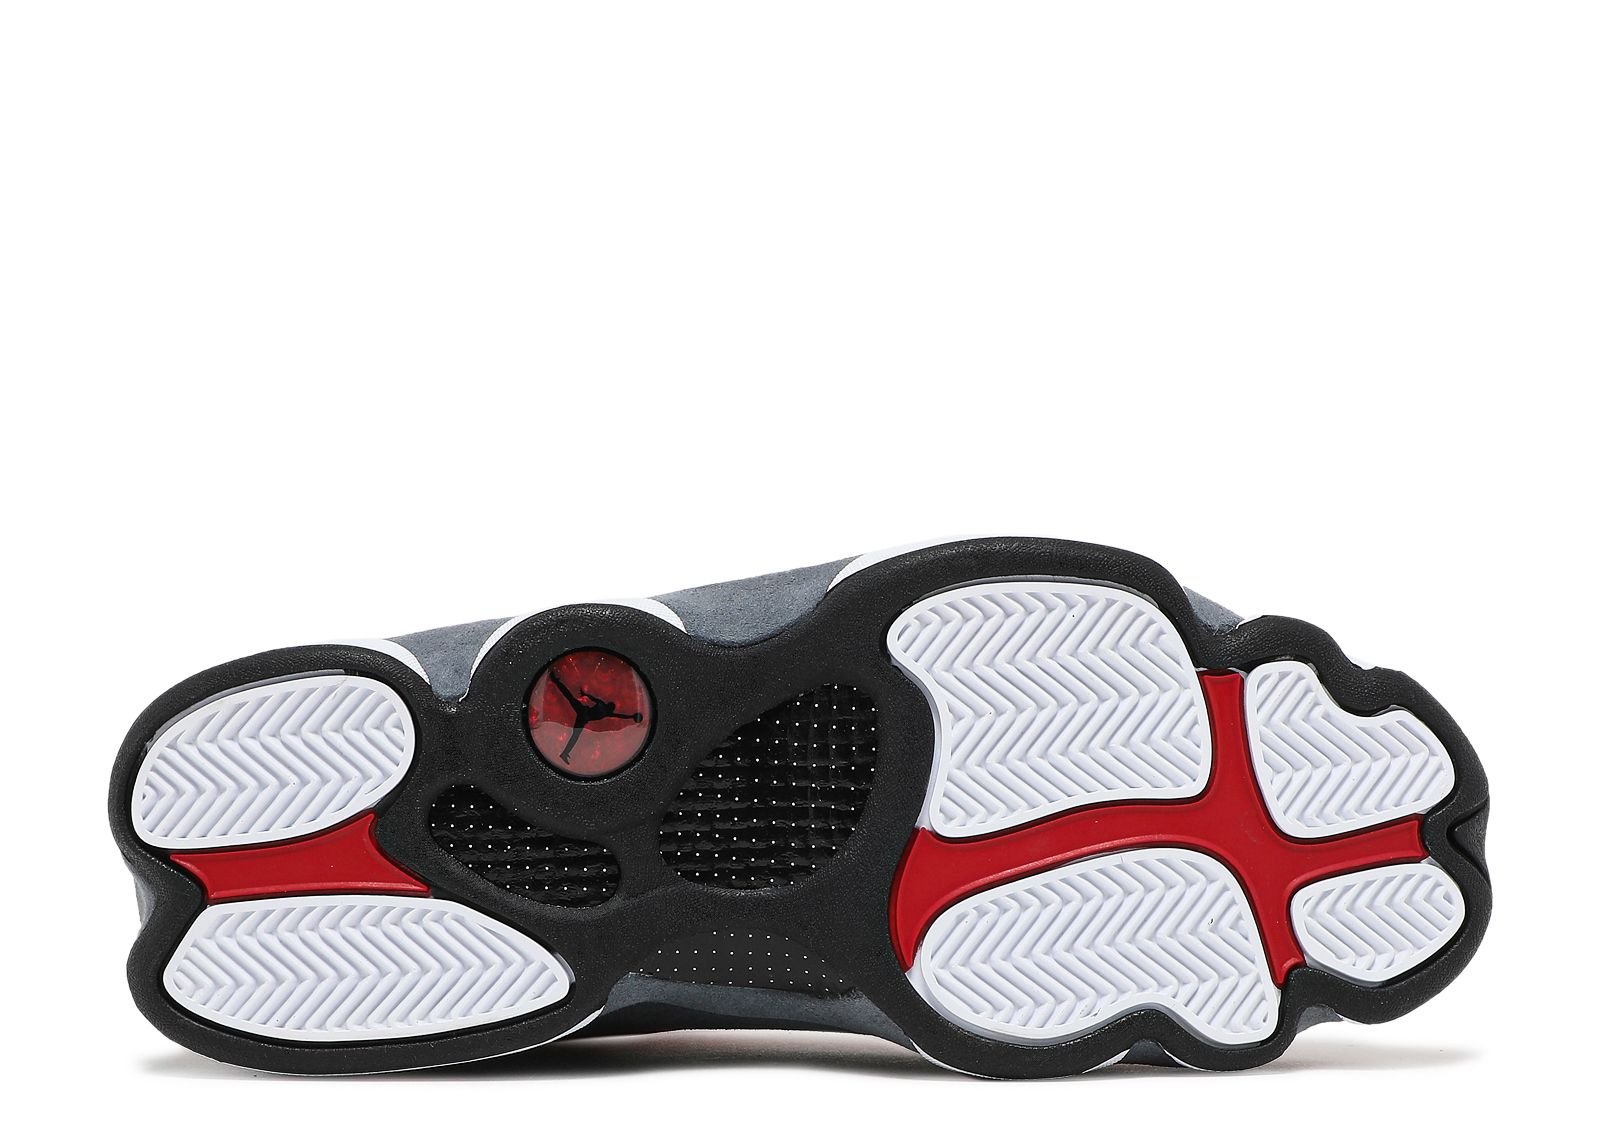 Sneakers Release – “Red Flint” Jordan 13 Retro Launching  in Full Fam